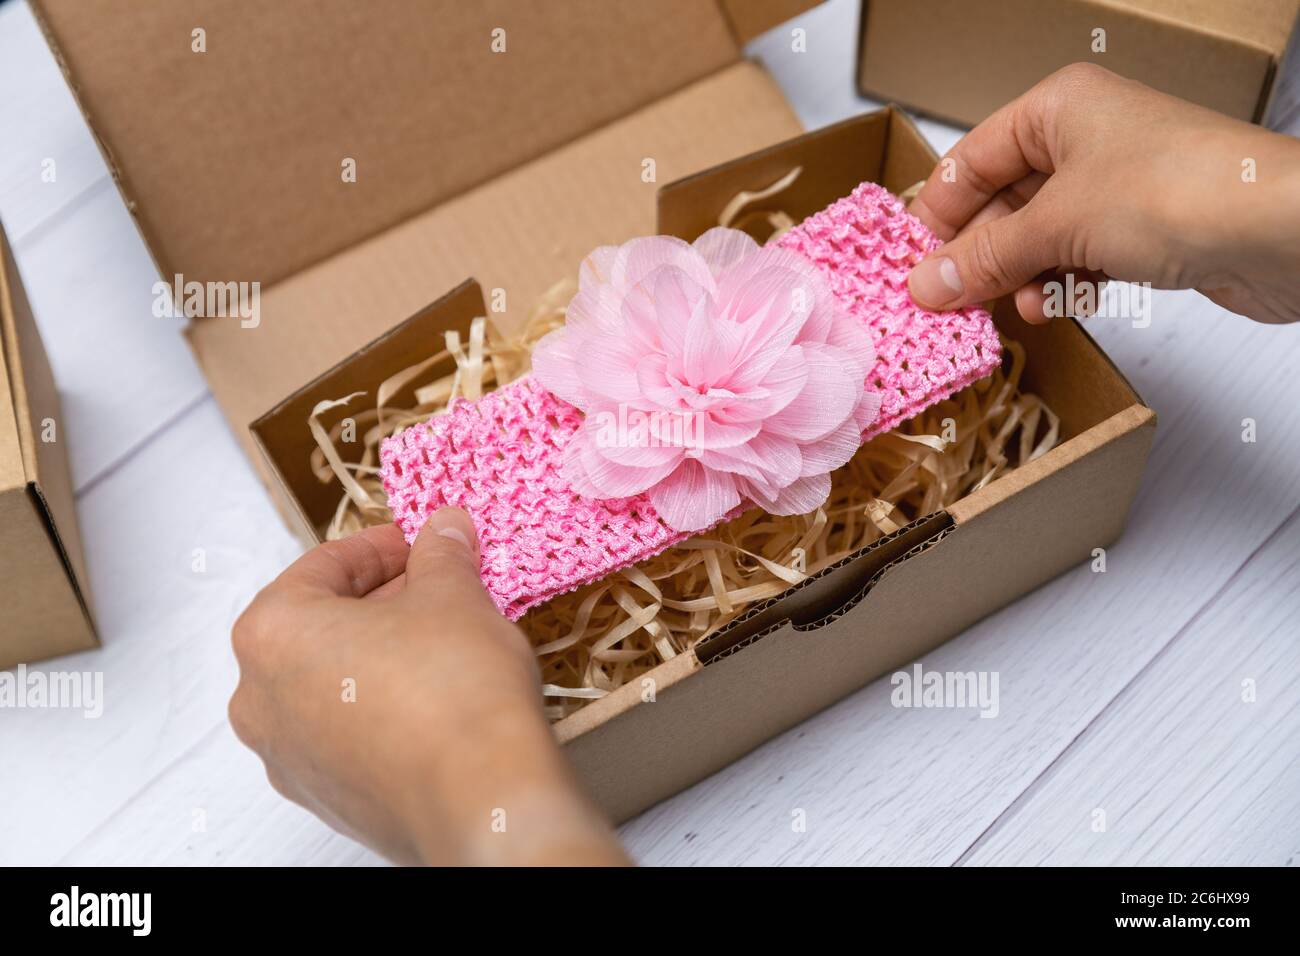 Handwerk Business - Frau Verpackung handgemachte Baby floral Stirnband in Karton für den Versand Stockfoto